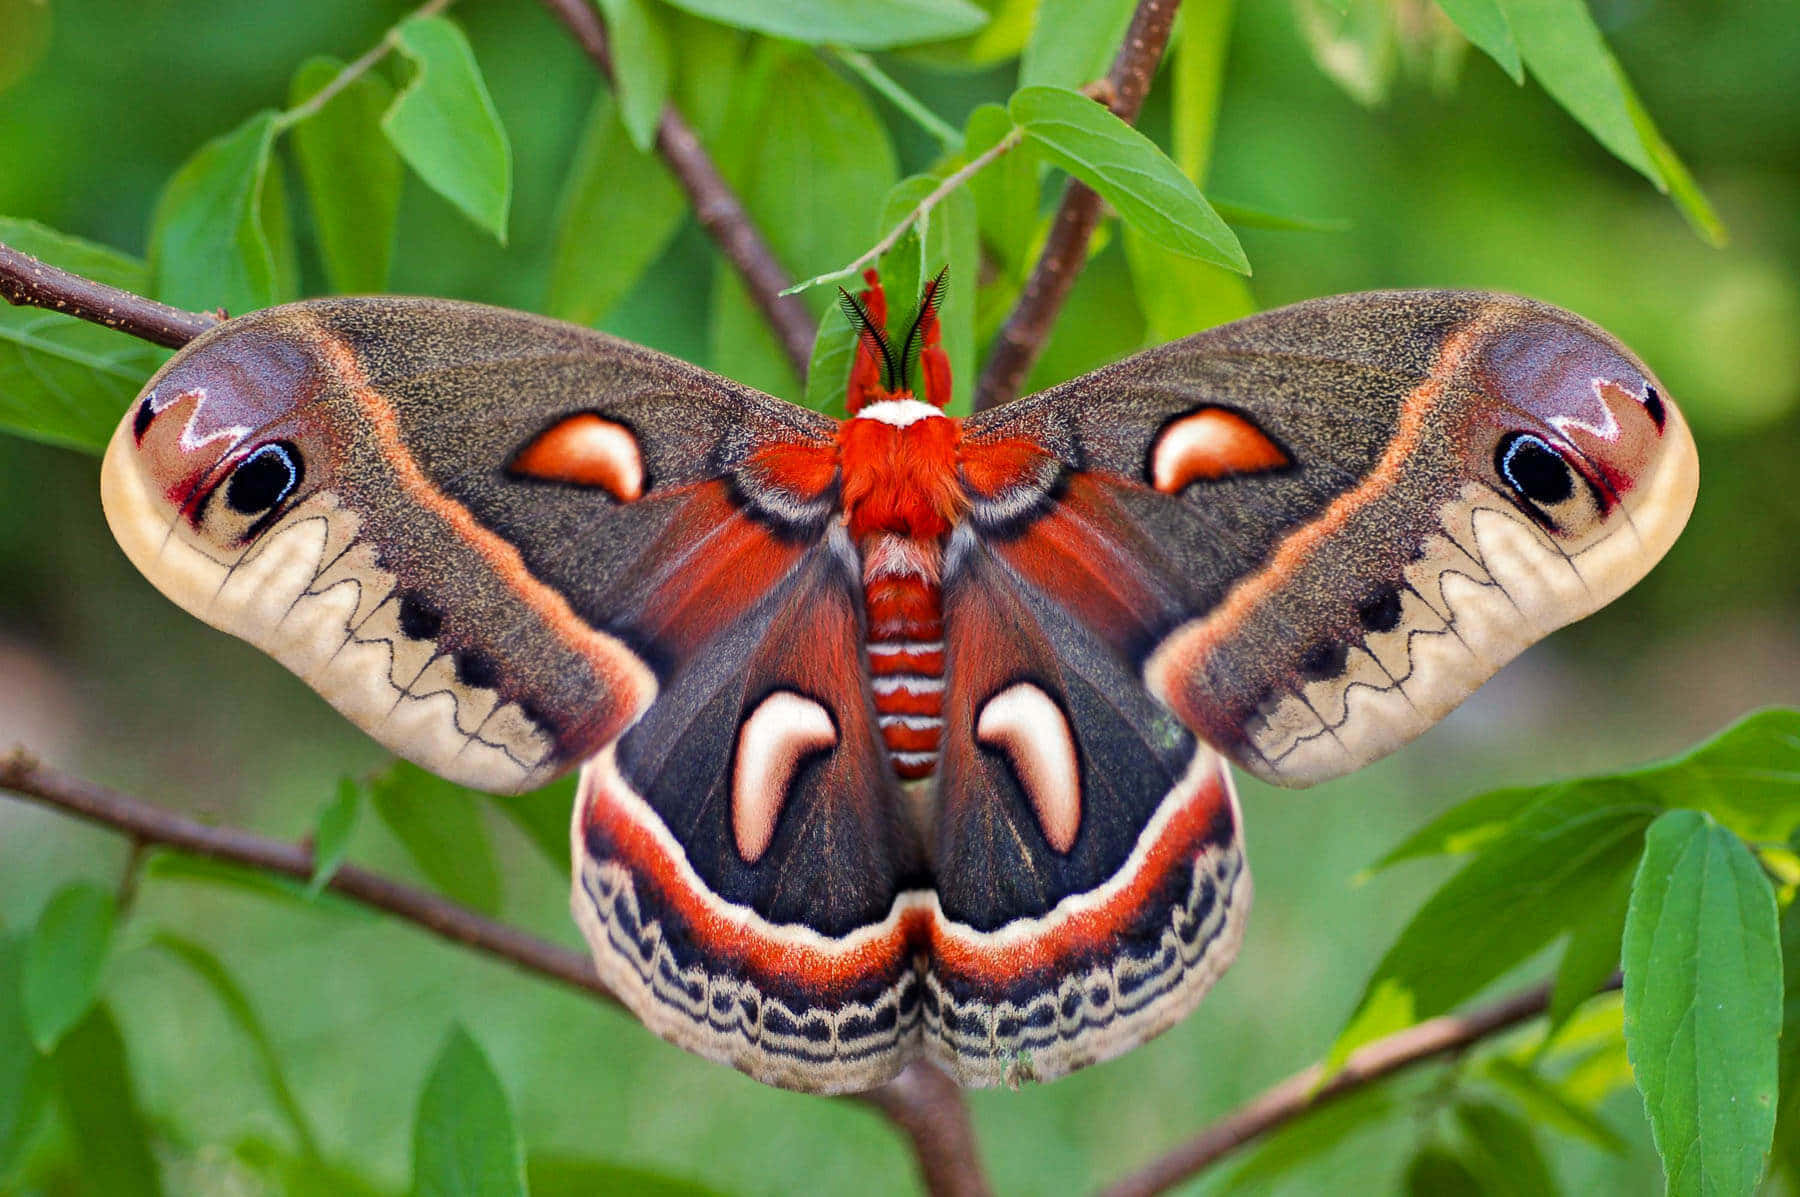 A beautiful Moth admiring its unique coloring